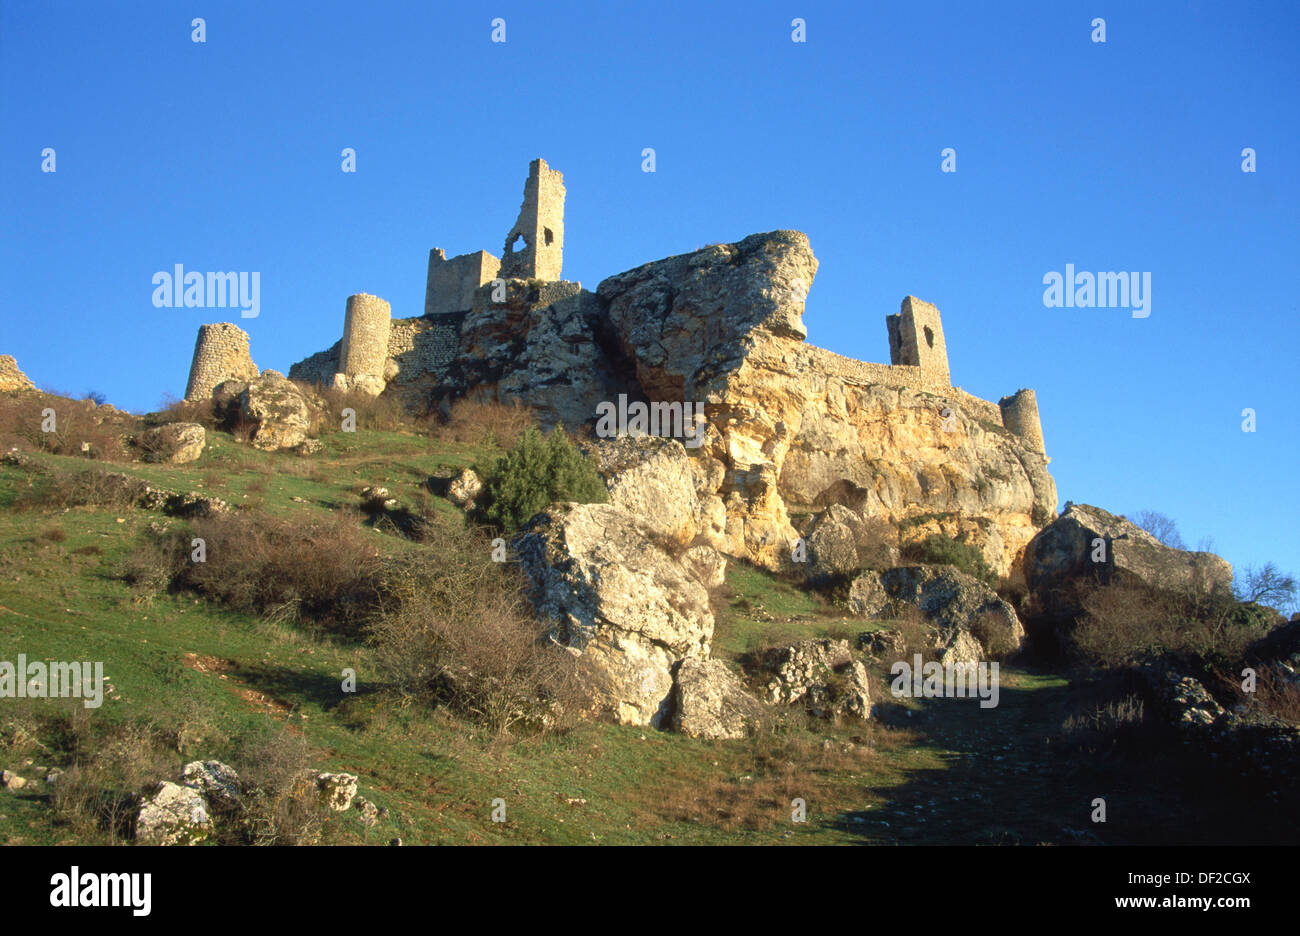 Château et ses remparts datant du xive siècle. Calatañazor. La province de Soria. Espagne Banque D'Images